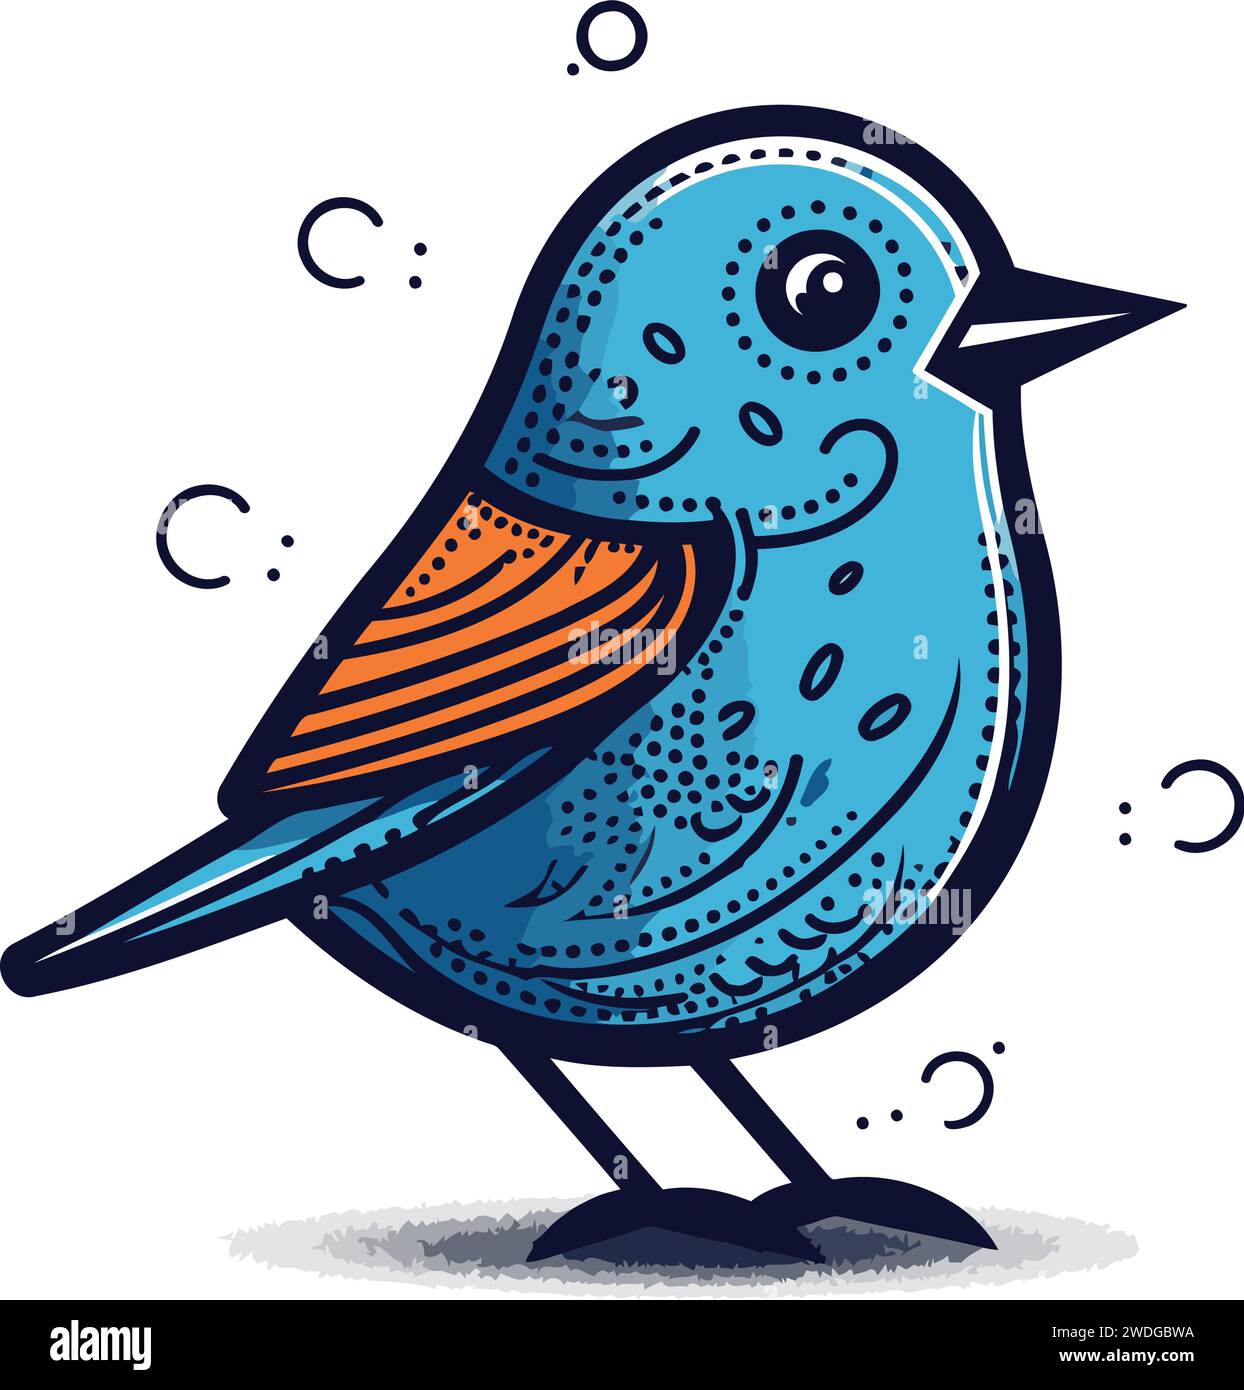 Süßer blauer Vogel mit orangefarbenem Schnabel. Illustration des Zeichentrickvektors. Stock Vektor